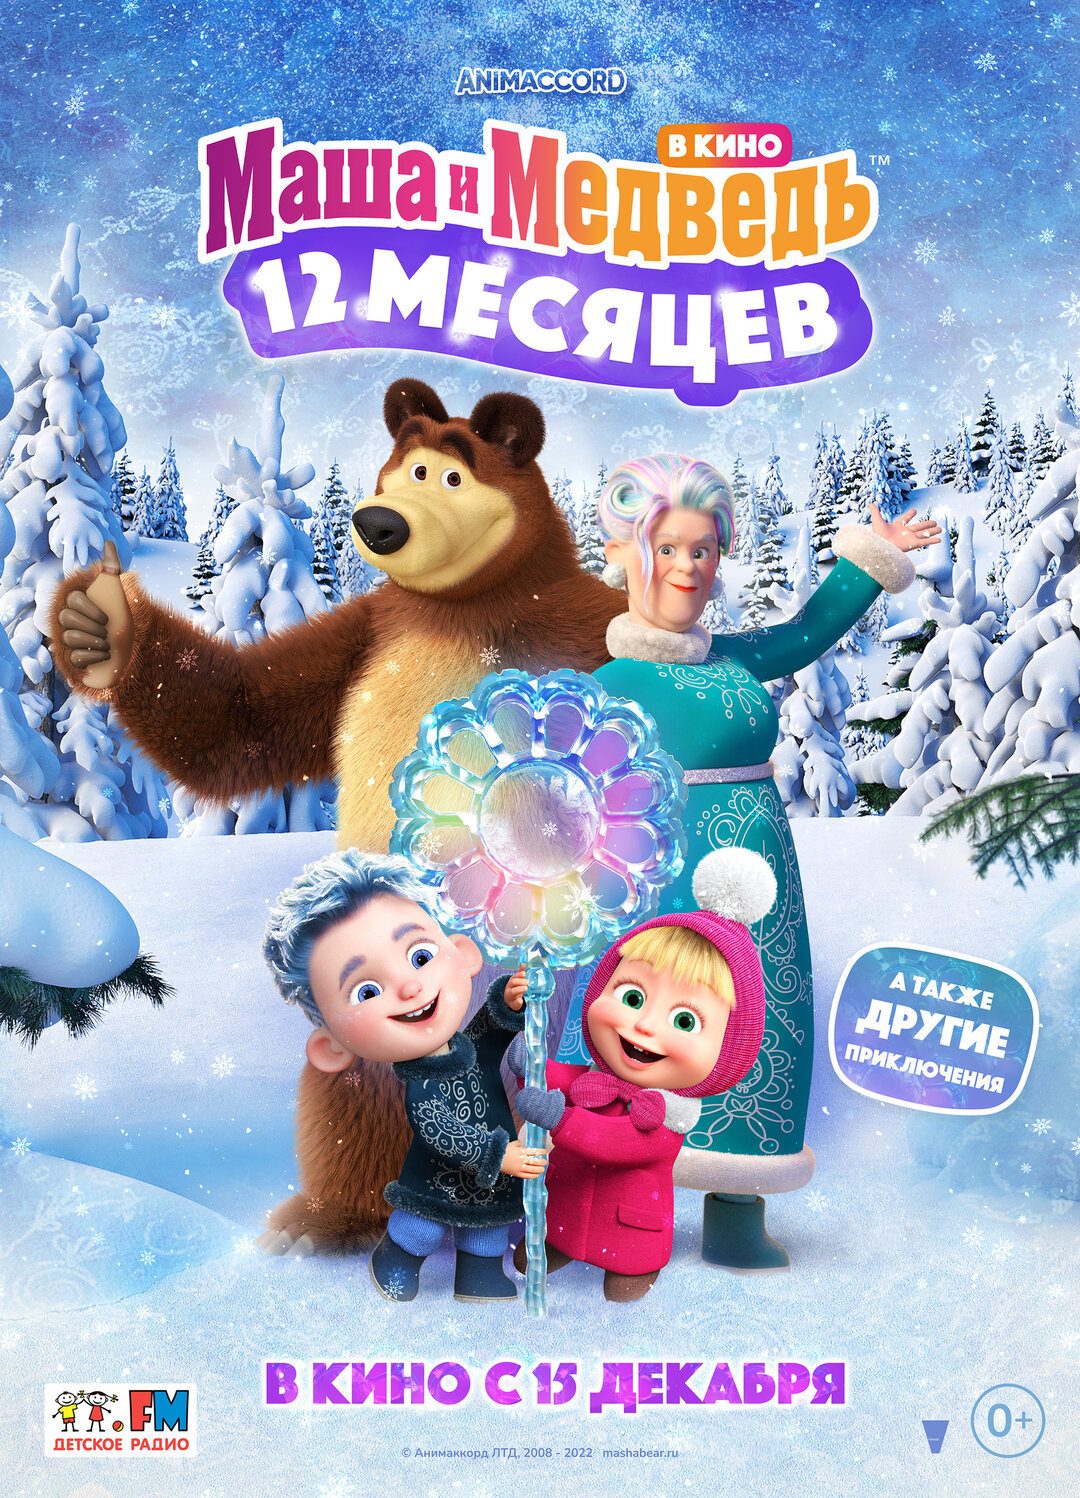 Обложка к картине "Маша и Медведь в кино: 12 месяцев"